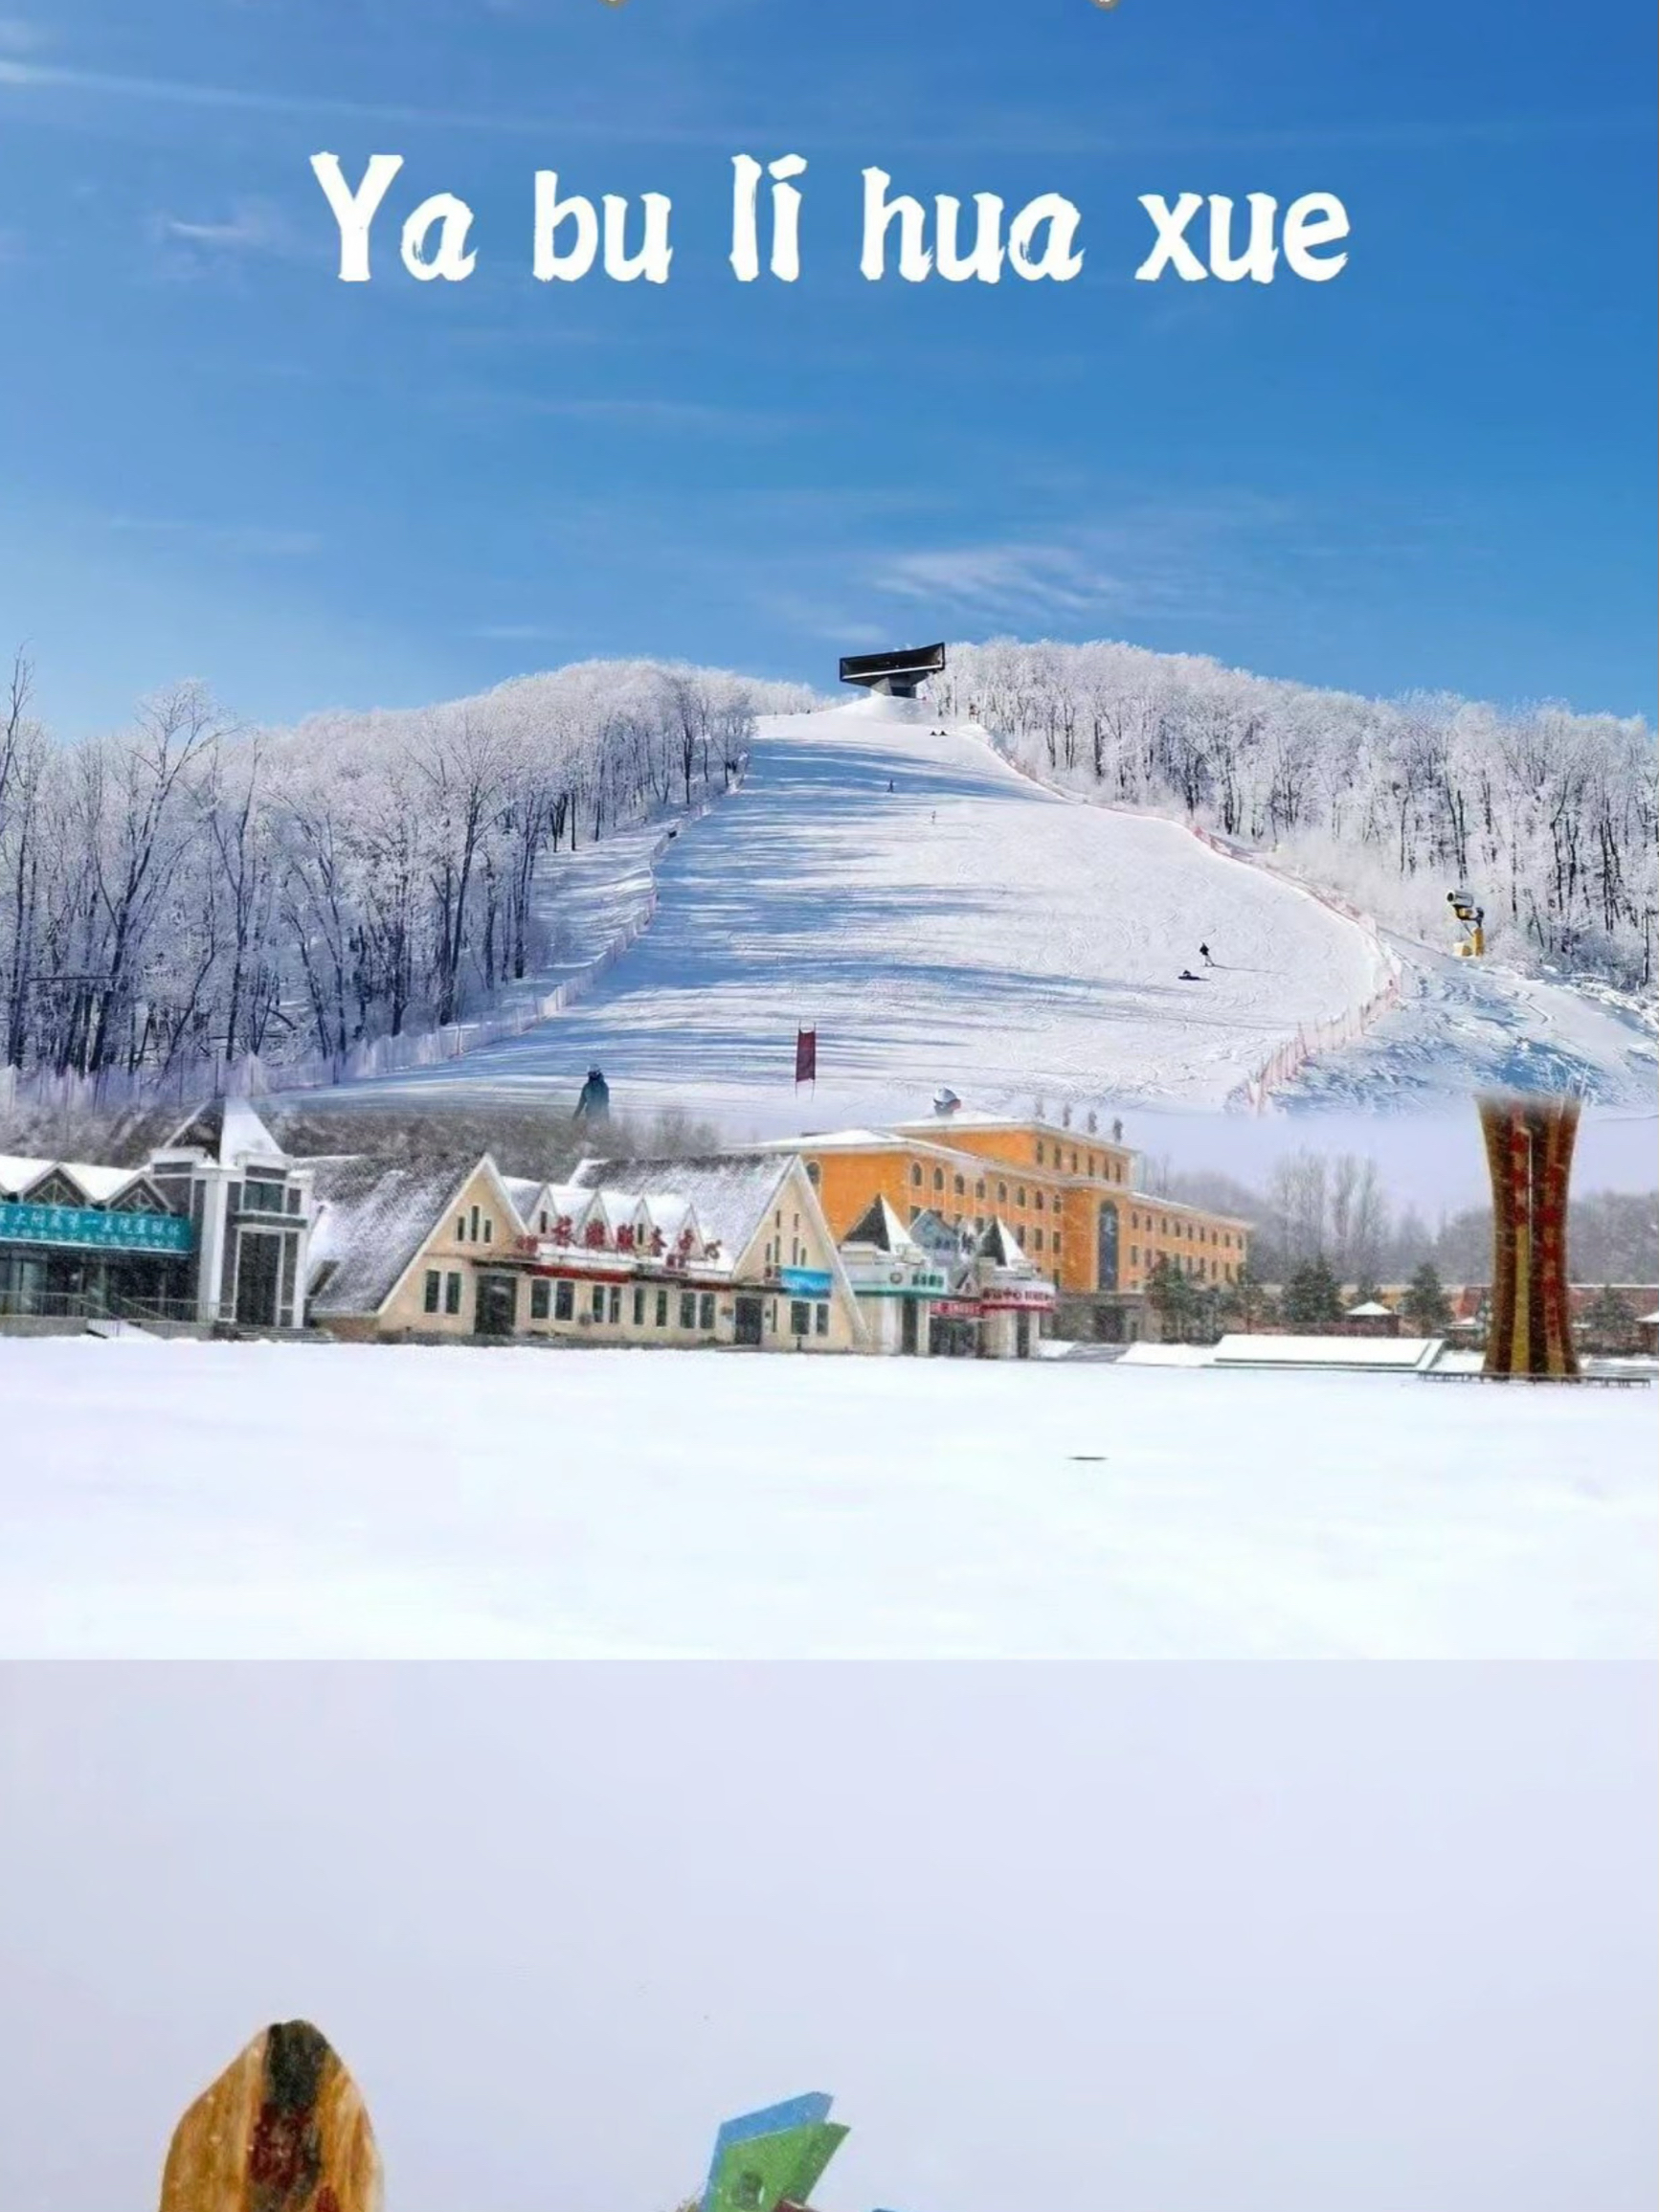 亚布力滑雪度假区：冬季旅行的性价比之选